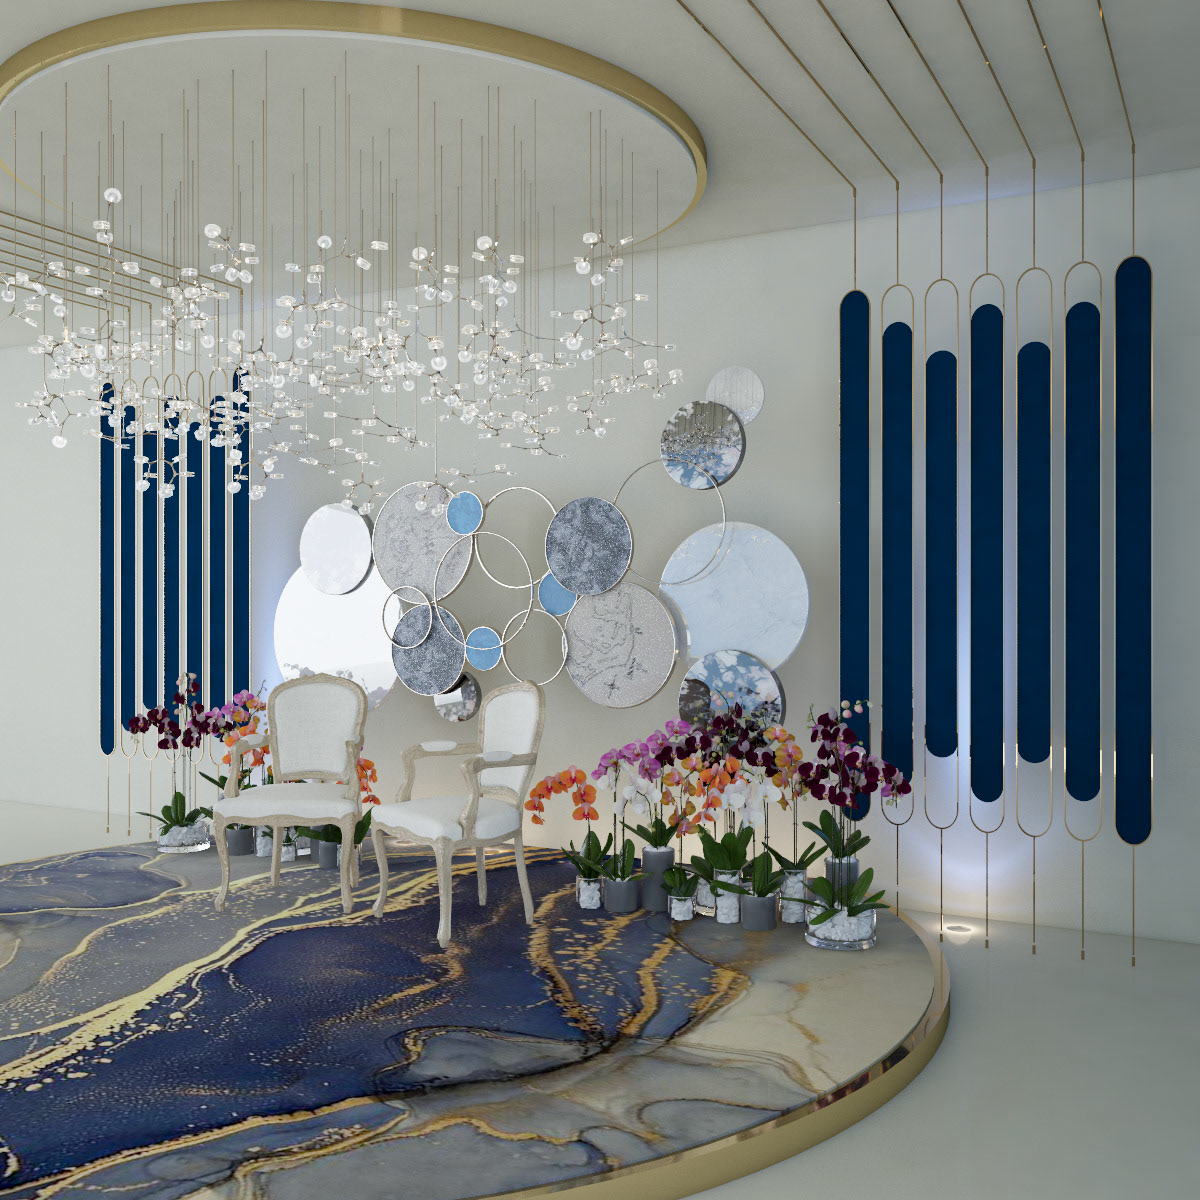 3dart designer Events luxury modern Render vray WeddingConcept weddinginspiration interior design 